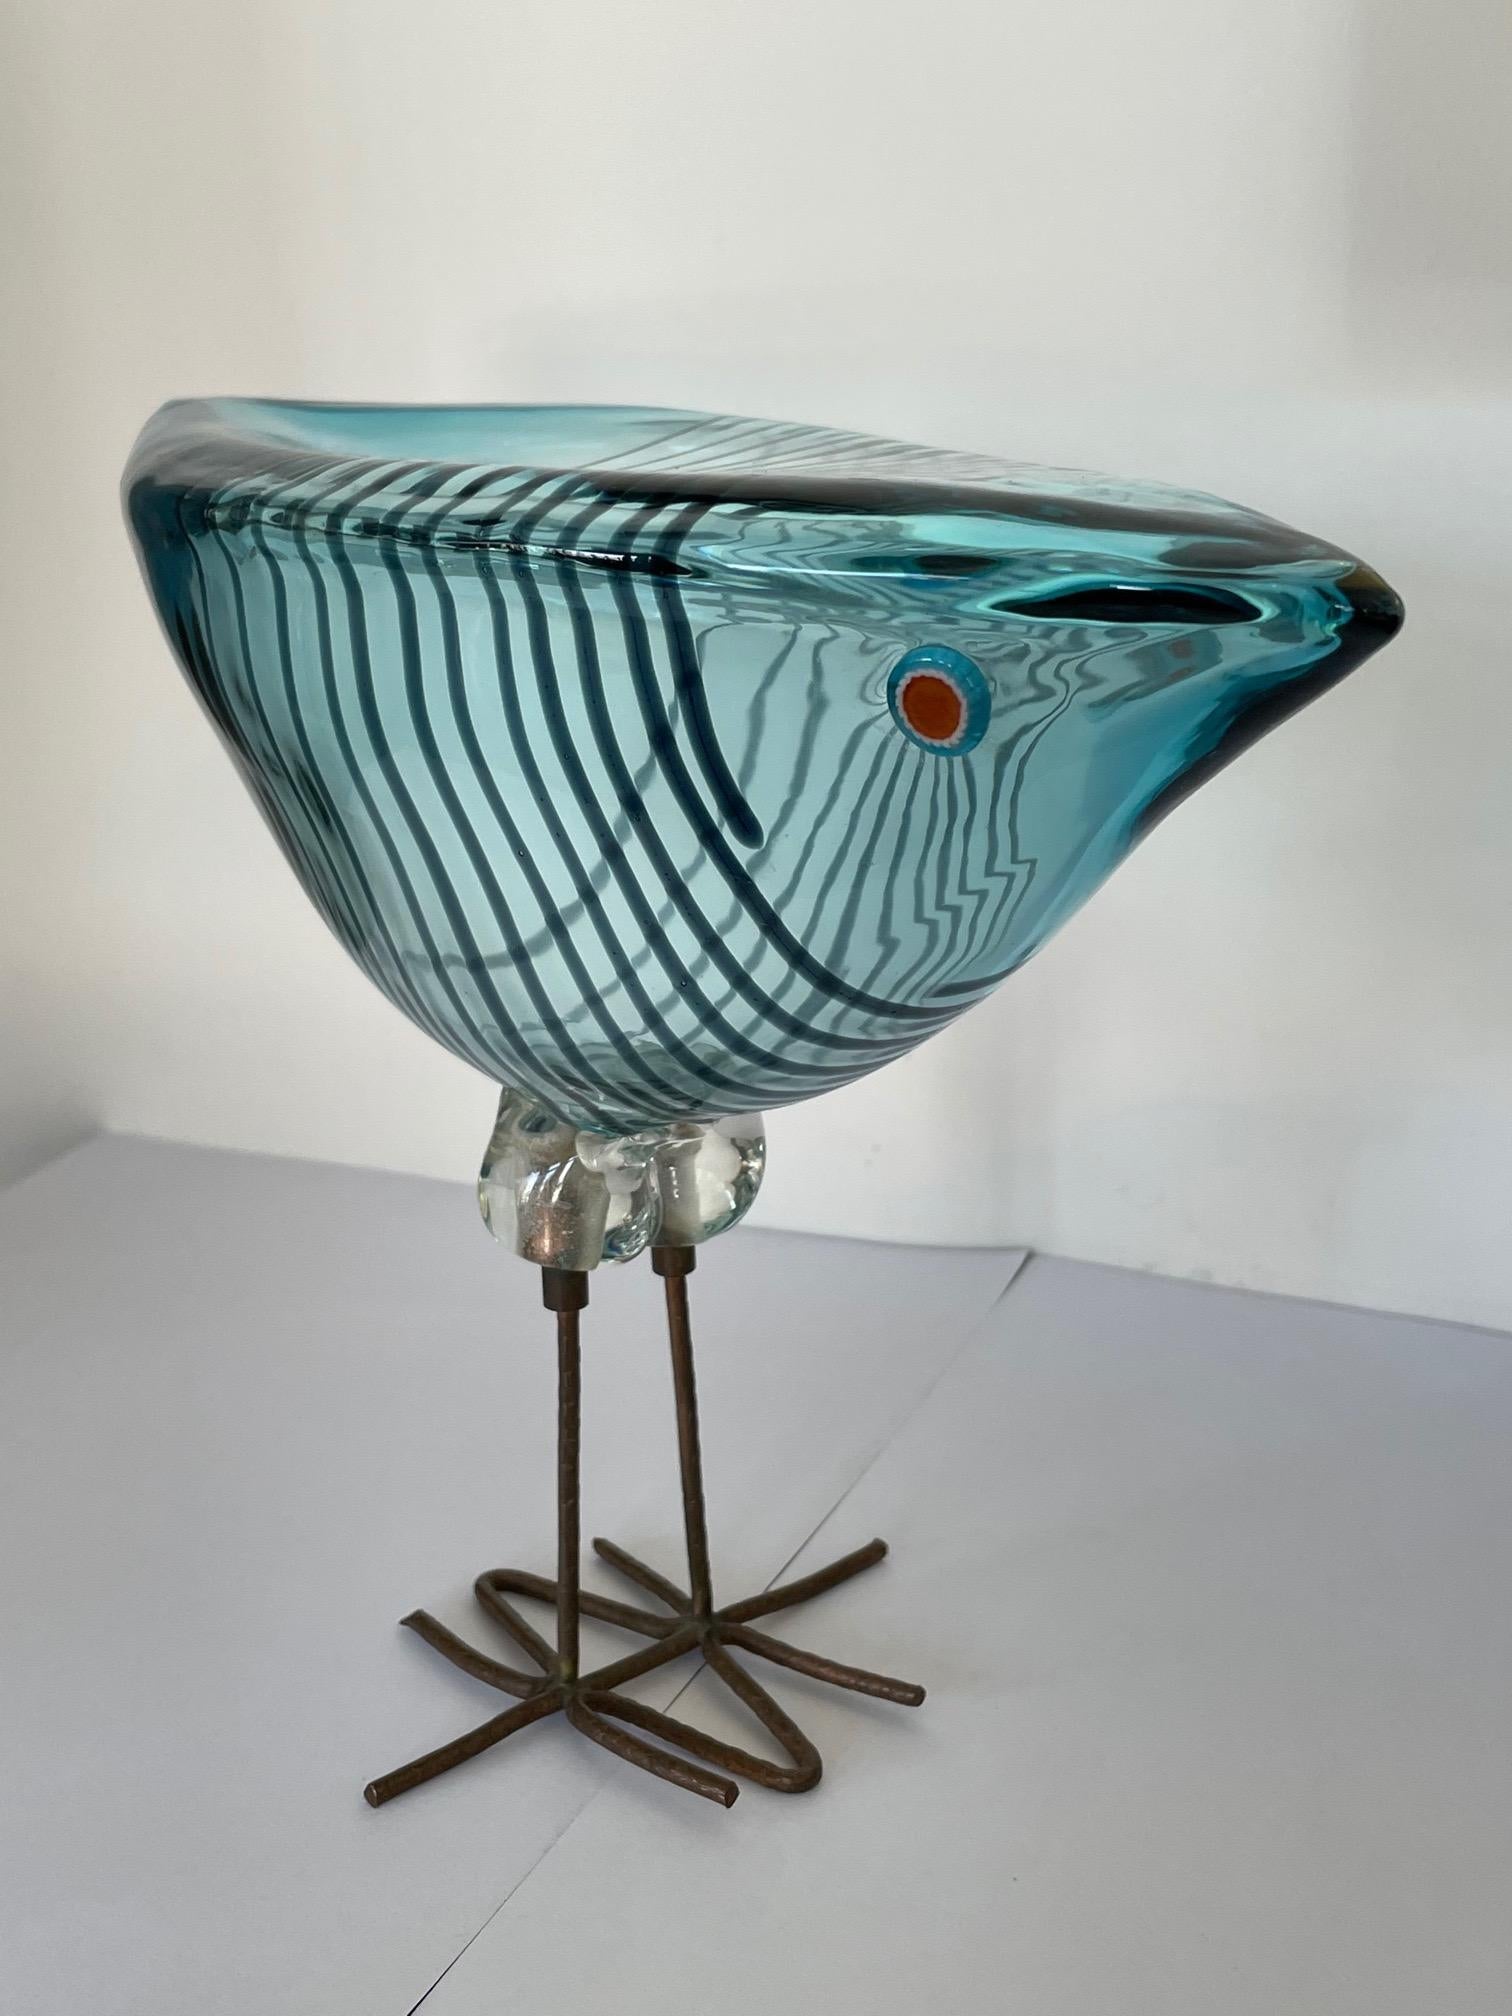 Ein fantastischer Glasvogel (Pulcino) von Alessandro Pianon für Vetreria Vistosi Murano, ca. 1970er Jahre. Die Augen sind aus Murringlas, der Sockel ist aus Messing.